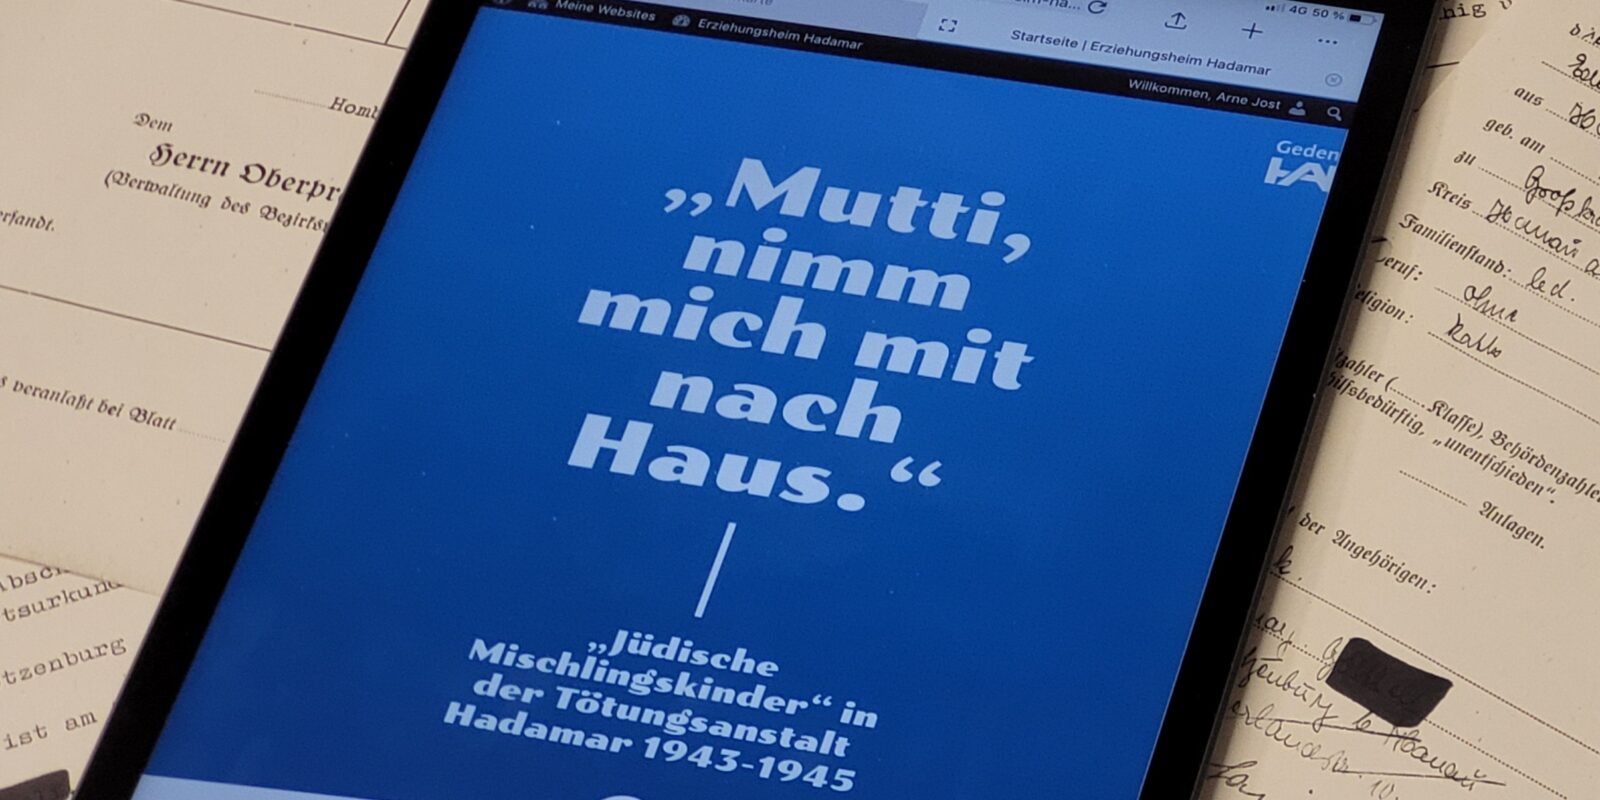 Ein Tablet liegt auf Akten. Auf dem Tablet ist eine Website geöffnet, man kann den Titel "Mutti nimm mich mit nach Haus" in weißer Schrift auf blauem Hintergrund lesen.